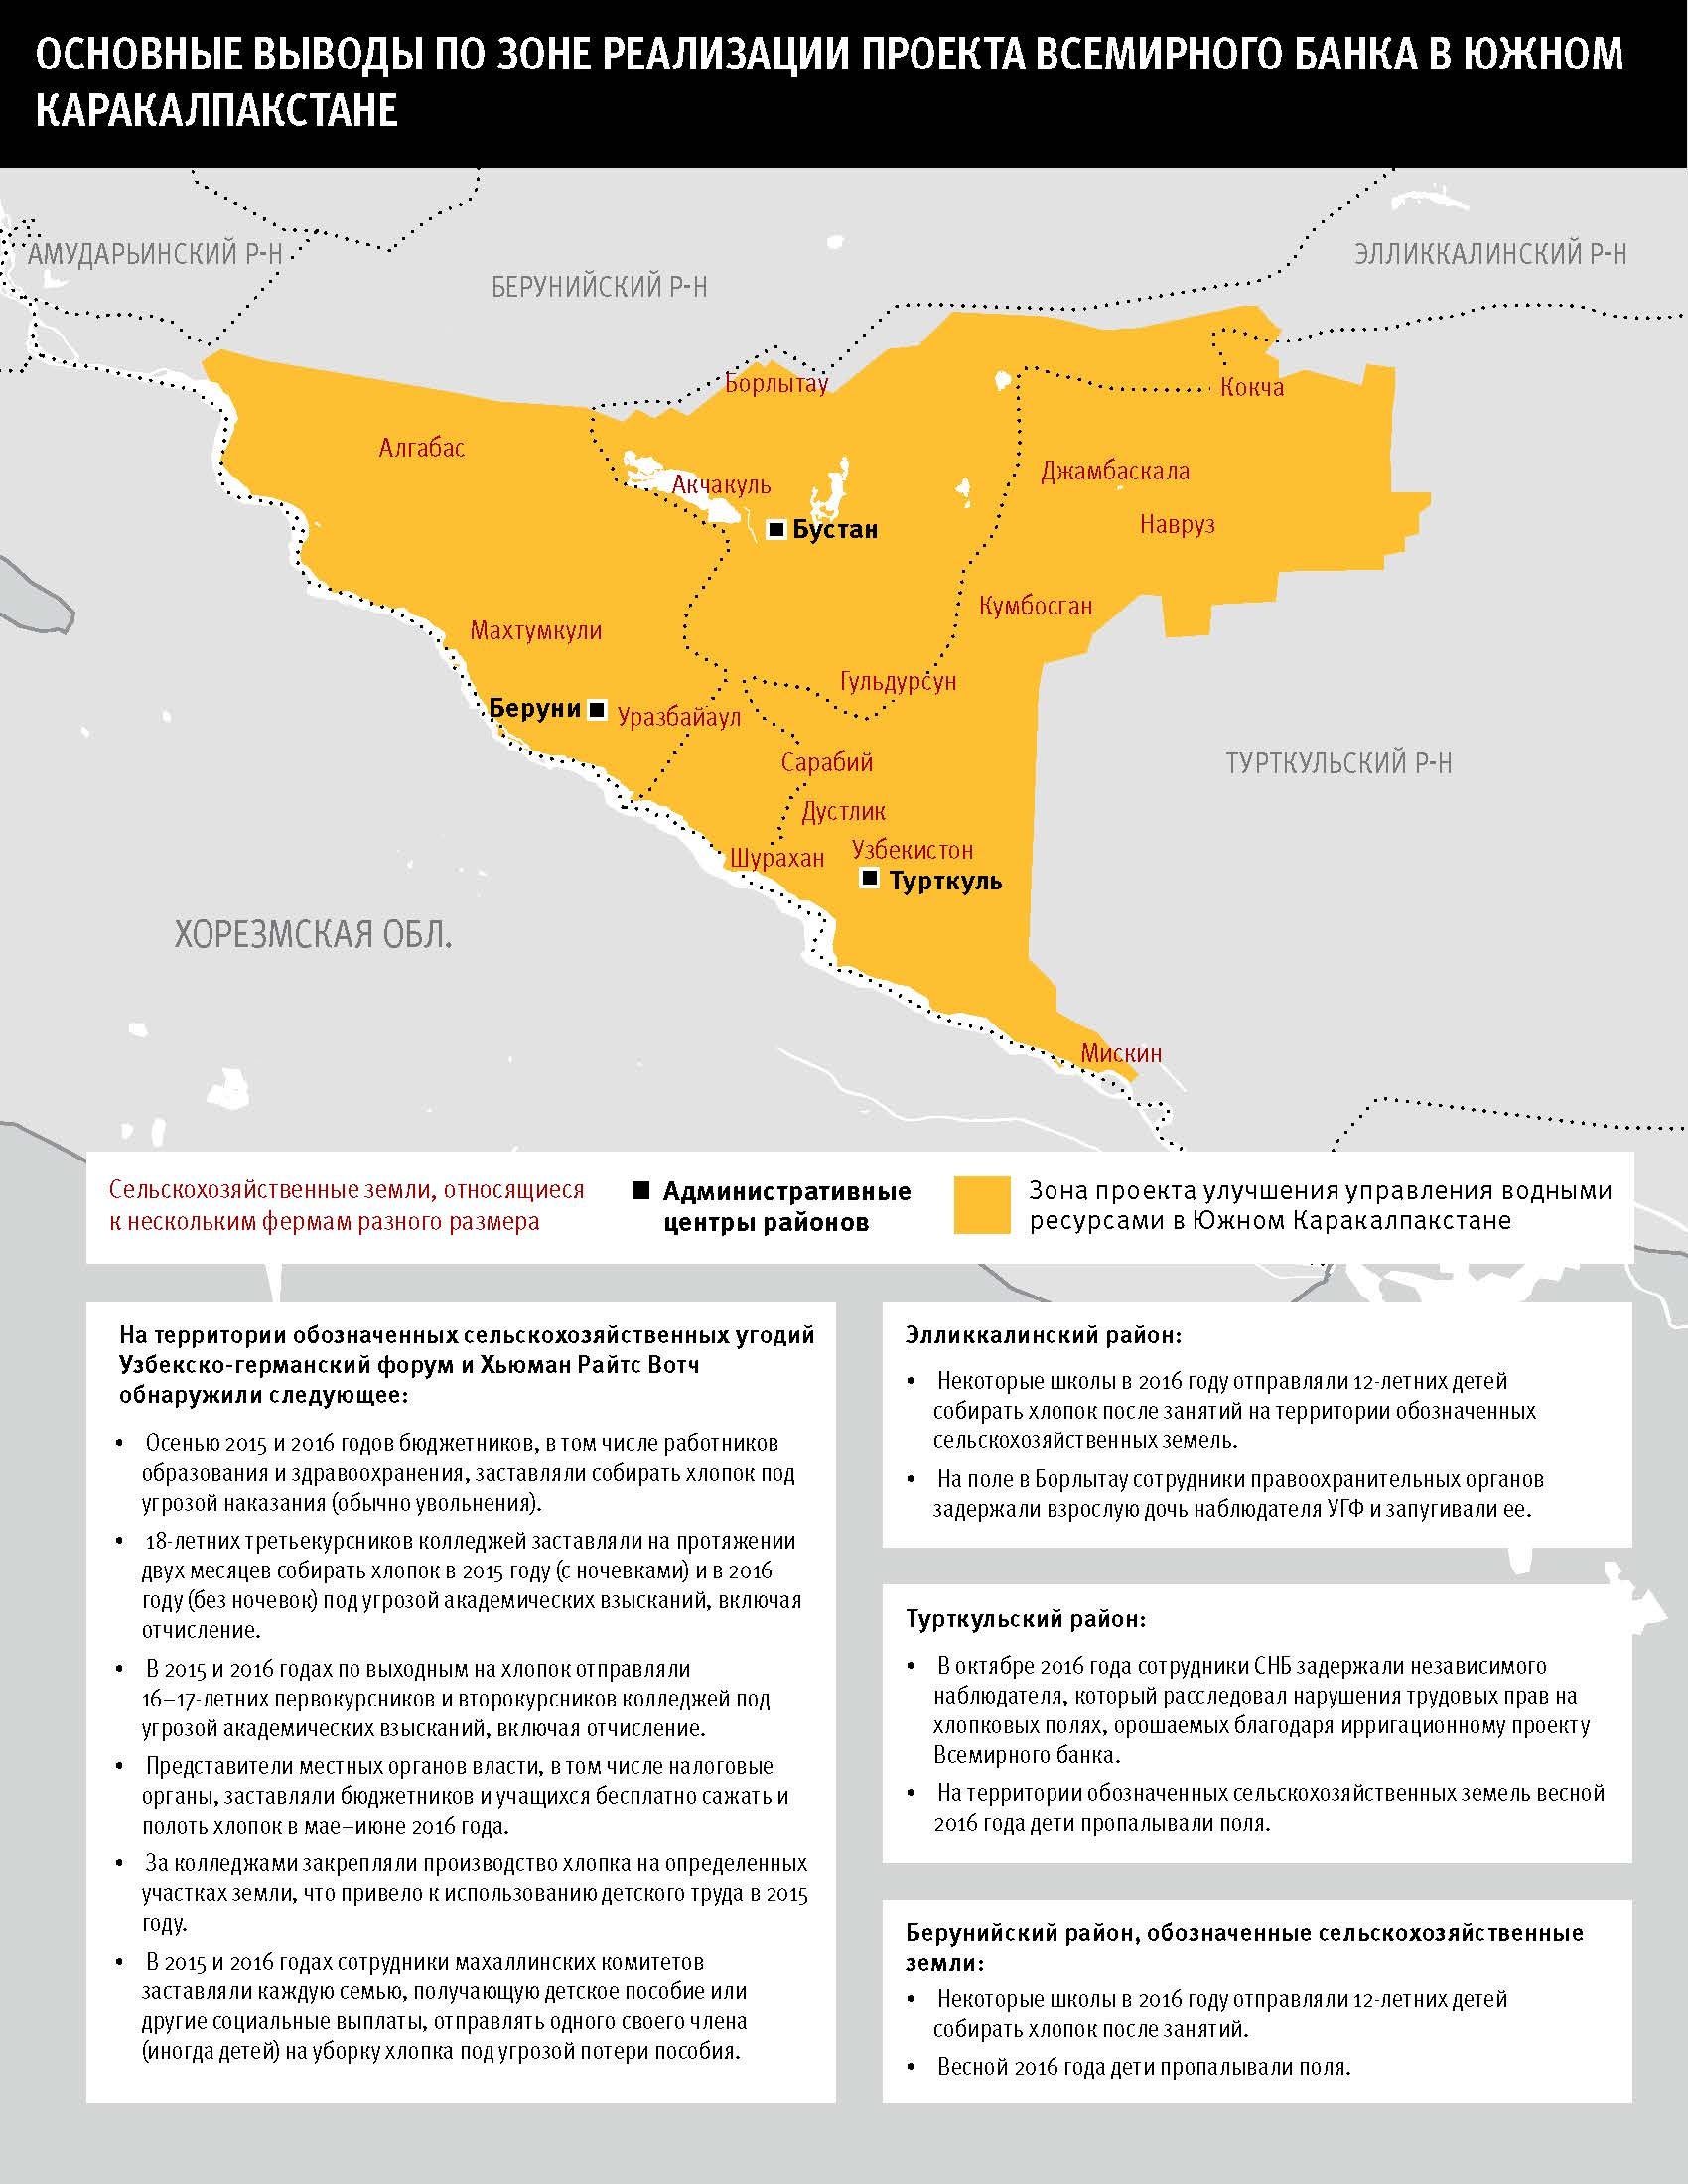 Карта основных выводов по зоне реализации проекта Всемирного банка в Южном Каракалпакстане